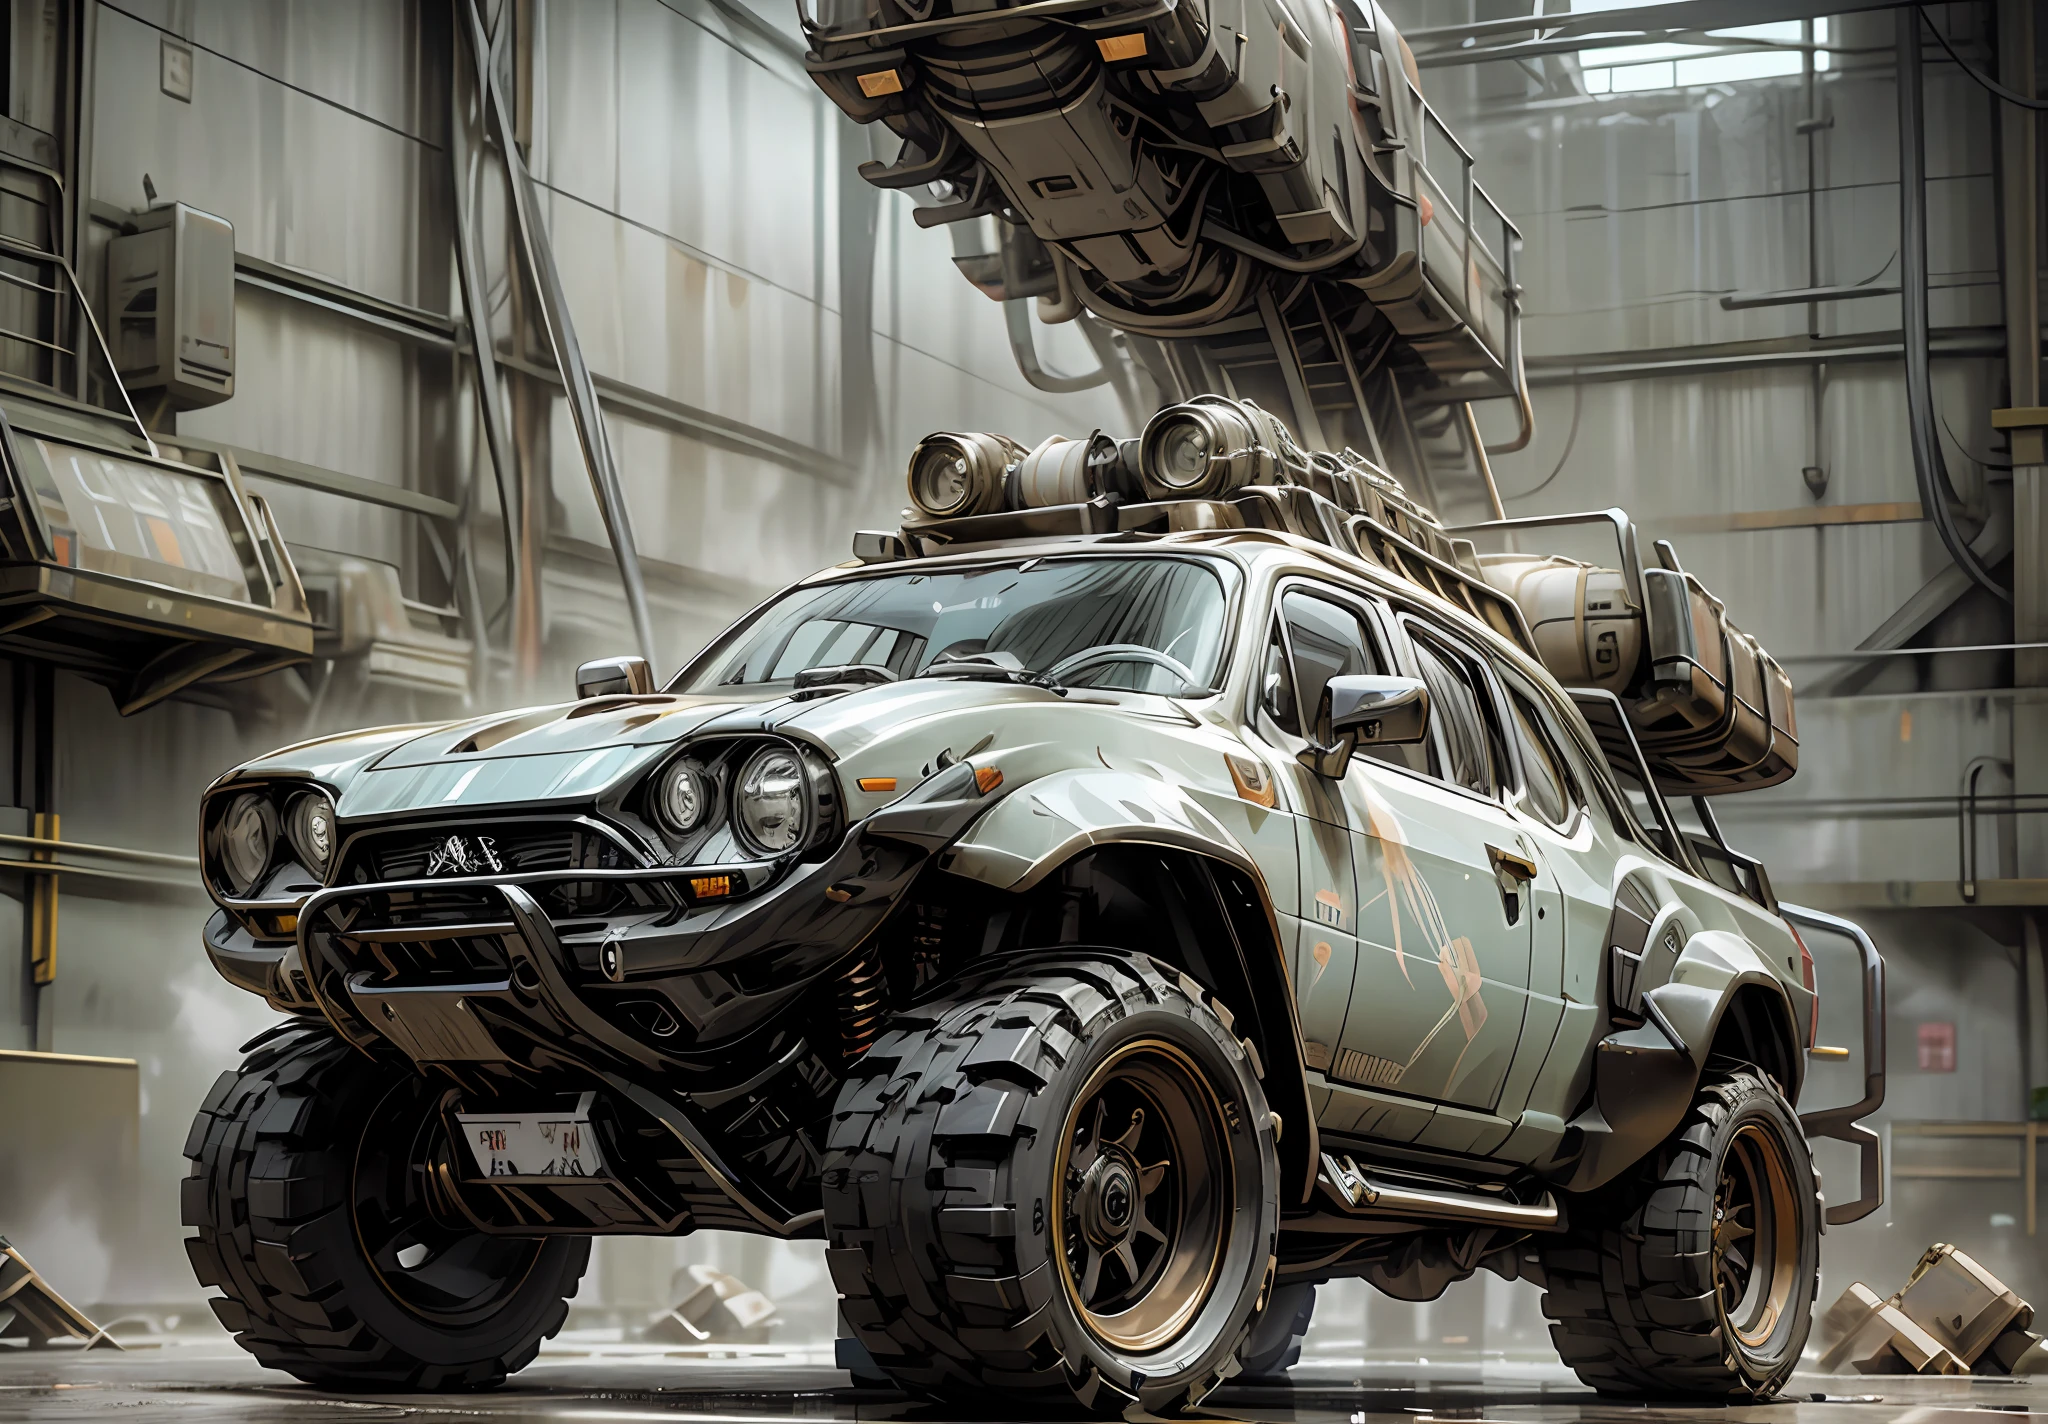 Il y a une camionnette Hummer EV, avec un armement anti-apocalyptique adapté, grille à lame renforcée en acier, avec pneus tout-terrain à l&#39;avant et châssis de réservoir à l&#39;arrière, avec diverses armes sur le dessus, Canons, bombe nucléaire, et destruction apocalyptique, Caractéristiques d&#39;un char de guerre, Voiture anti-apocalyptique ultramoderne, concept steampunk vif, Rendu 3D steampunk, Rendu stylisé 3D, voiture steampunk, steampunk de science-fiction coloré, Rendu Art Nouveau Octane, Rendu 3D stylisé, Rendu 3D hyper détaillé, Rendu 3D hyper détaillé, Rendu 3D surréaliste, Art numérique de rendu 3D